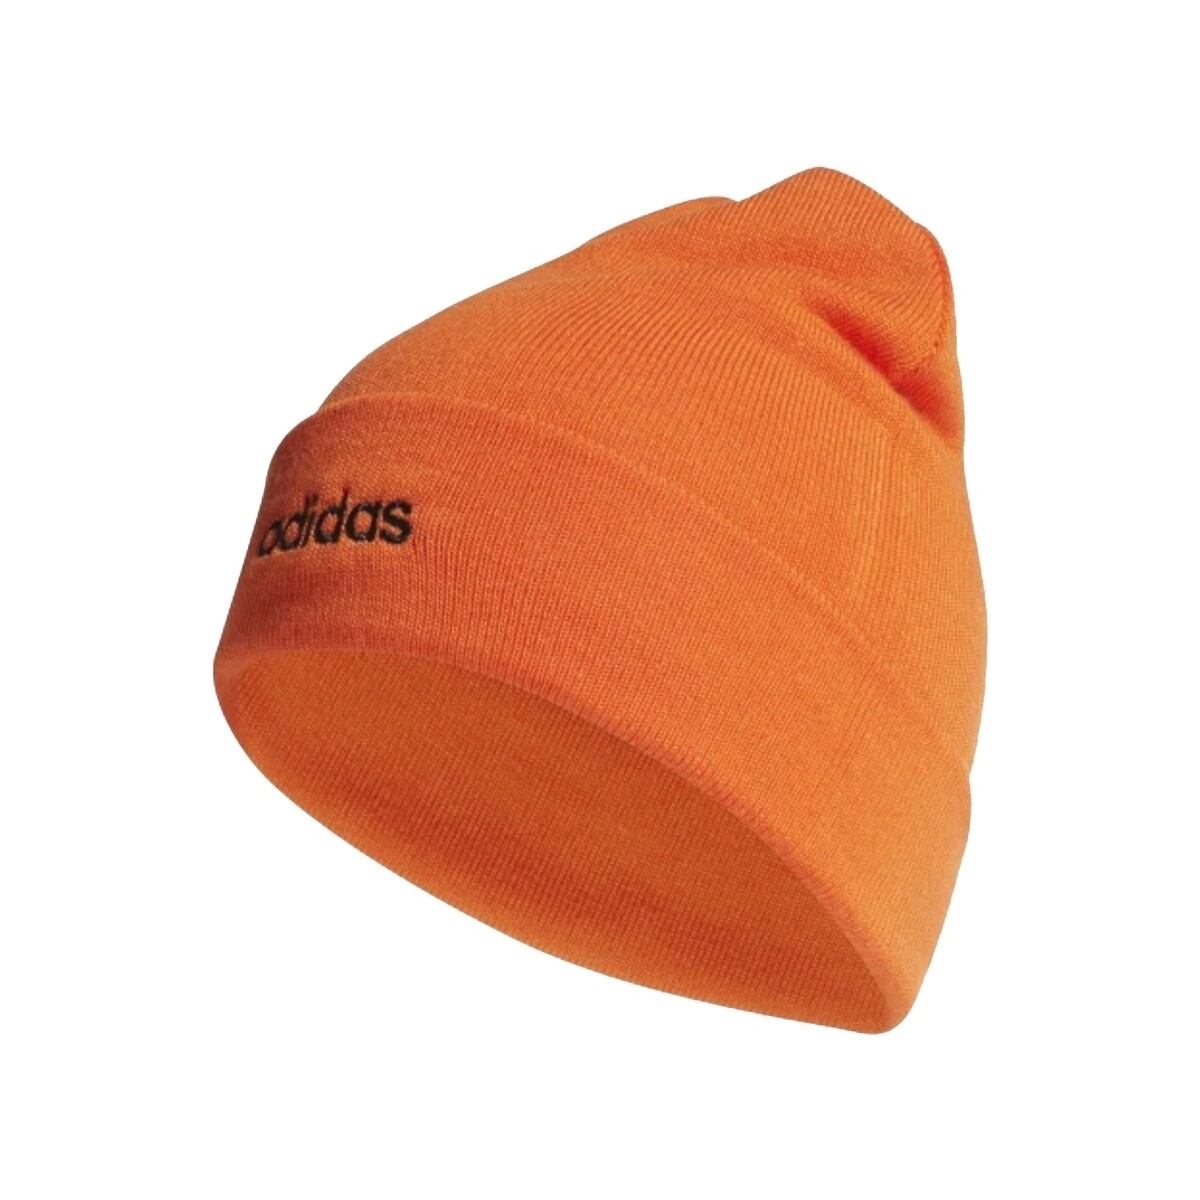 Accessoires Hüte adidas Originals ED0254 Orange